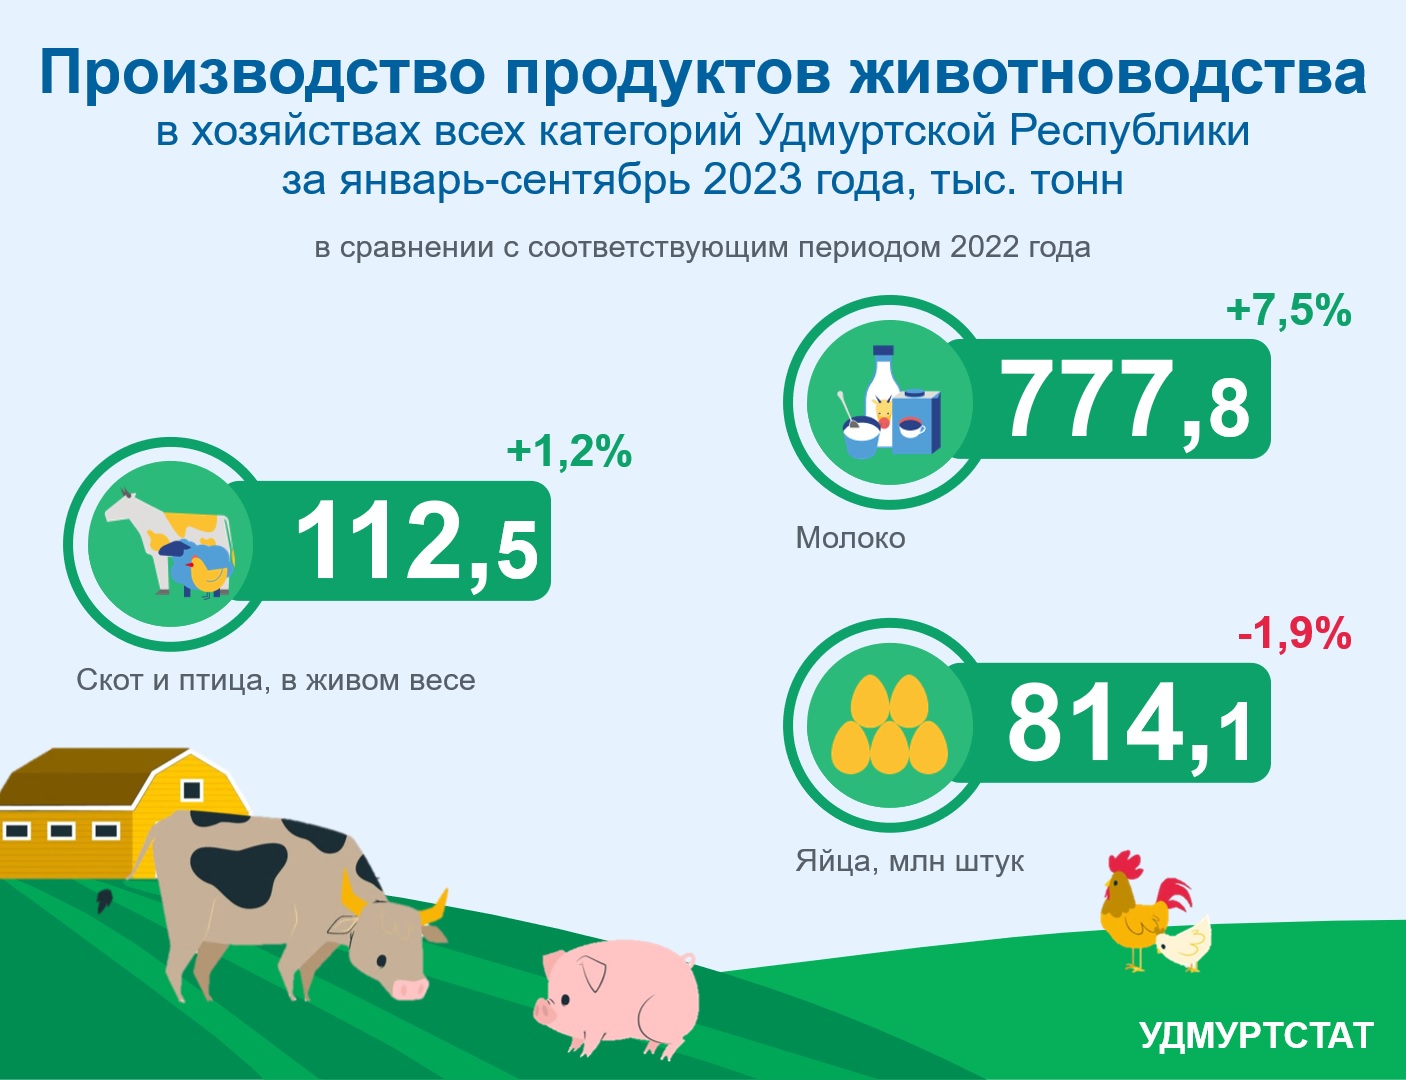 Производство продуктов животноводства за январь-сентябрь 2023 года.